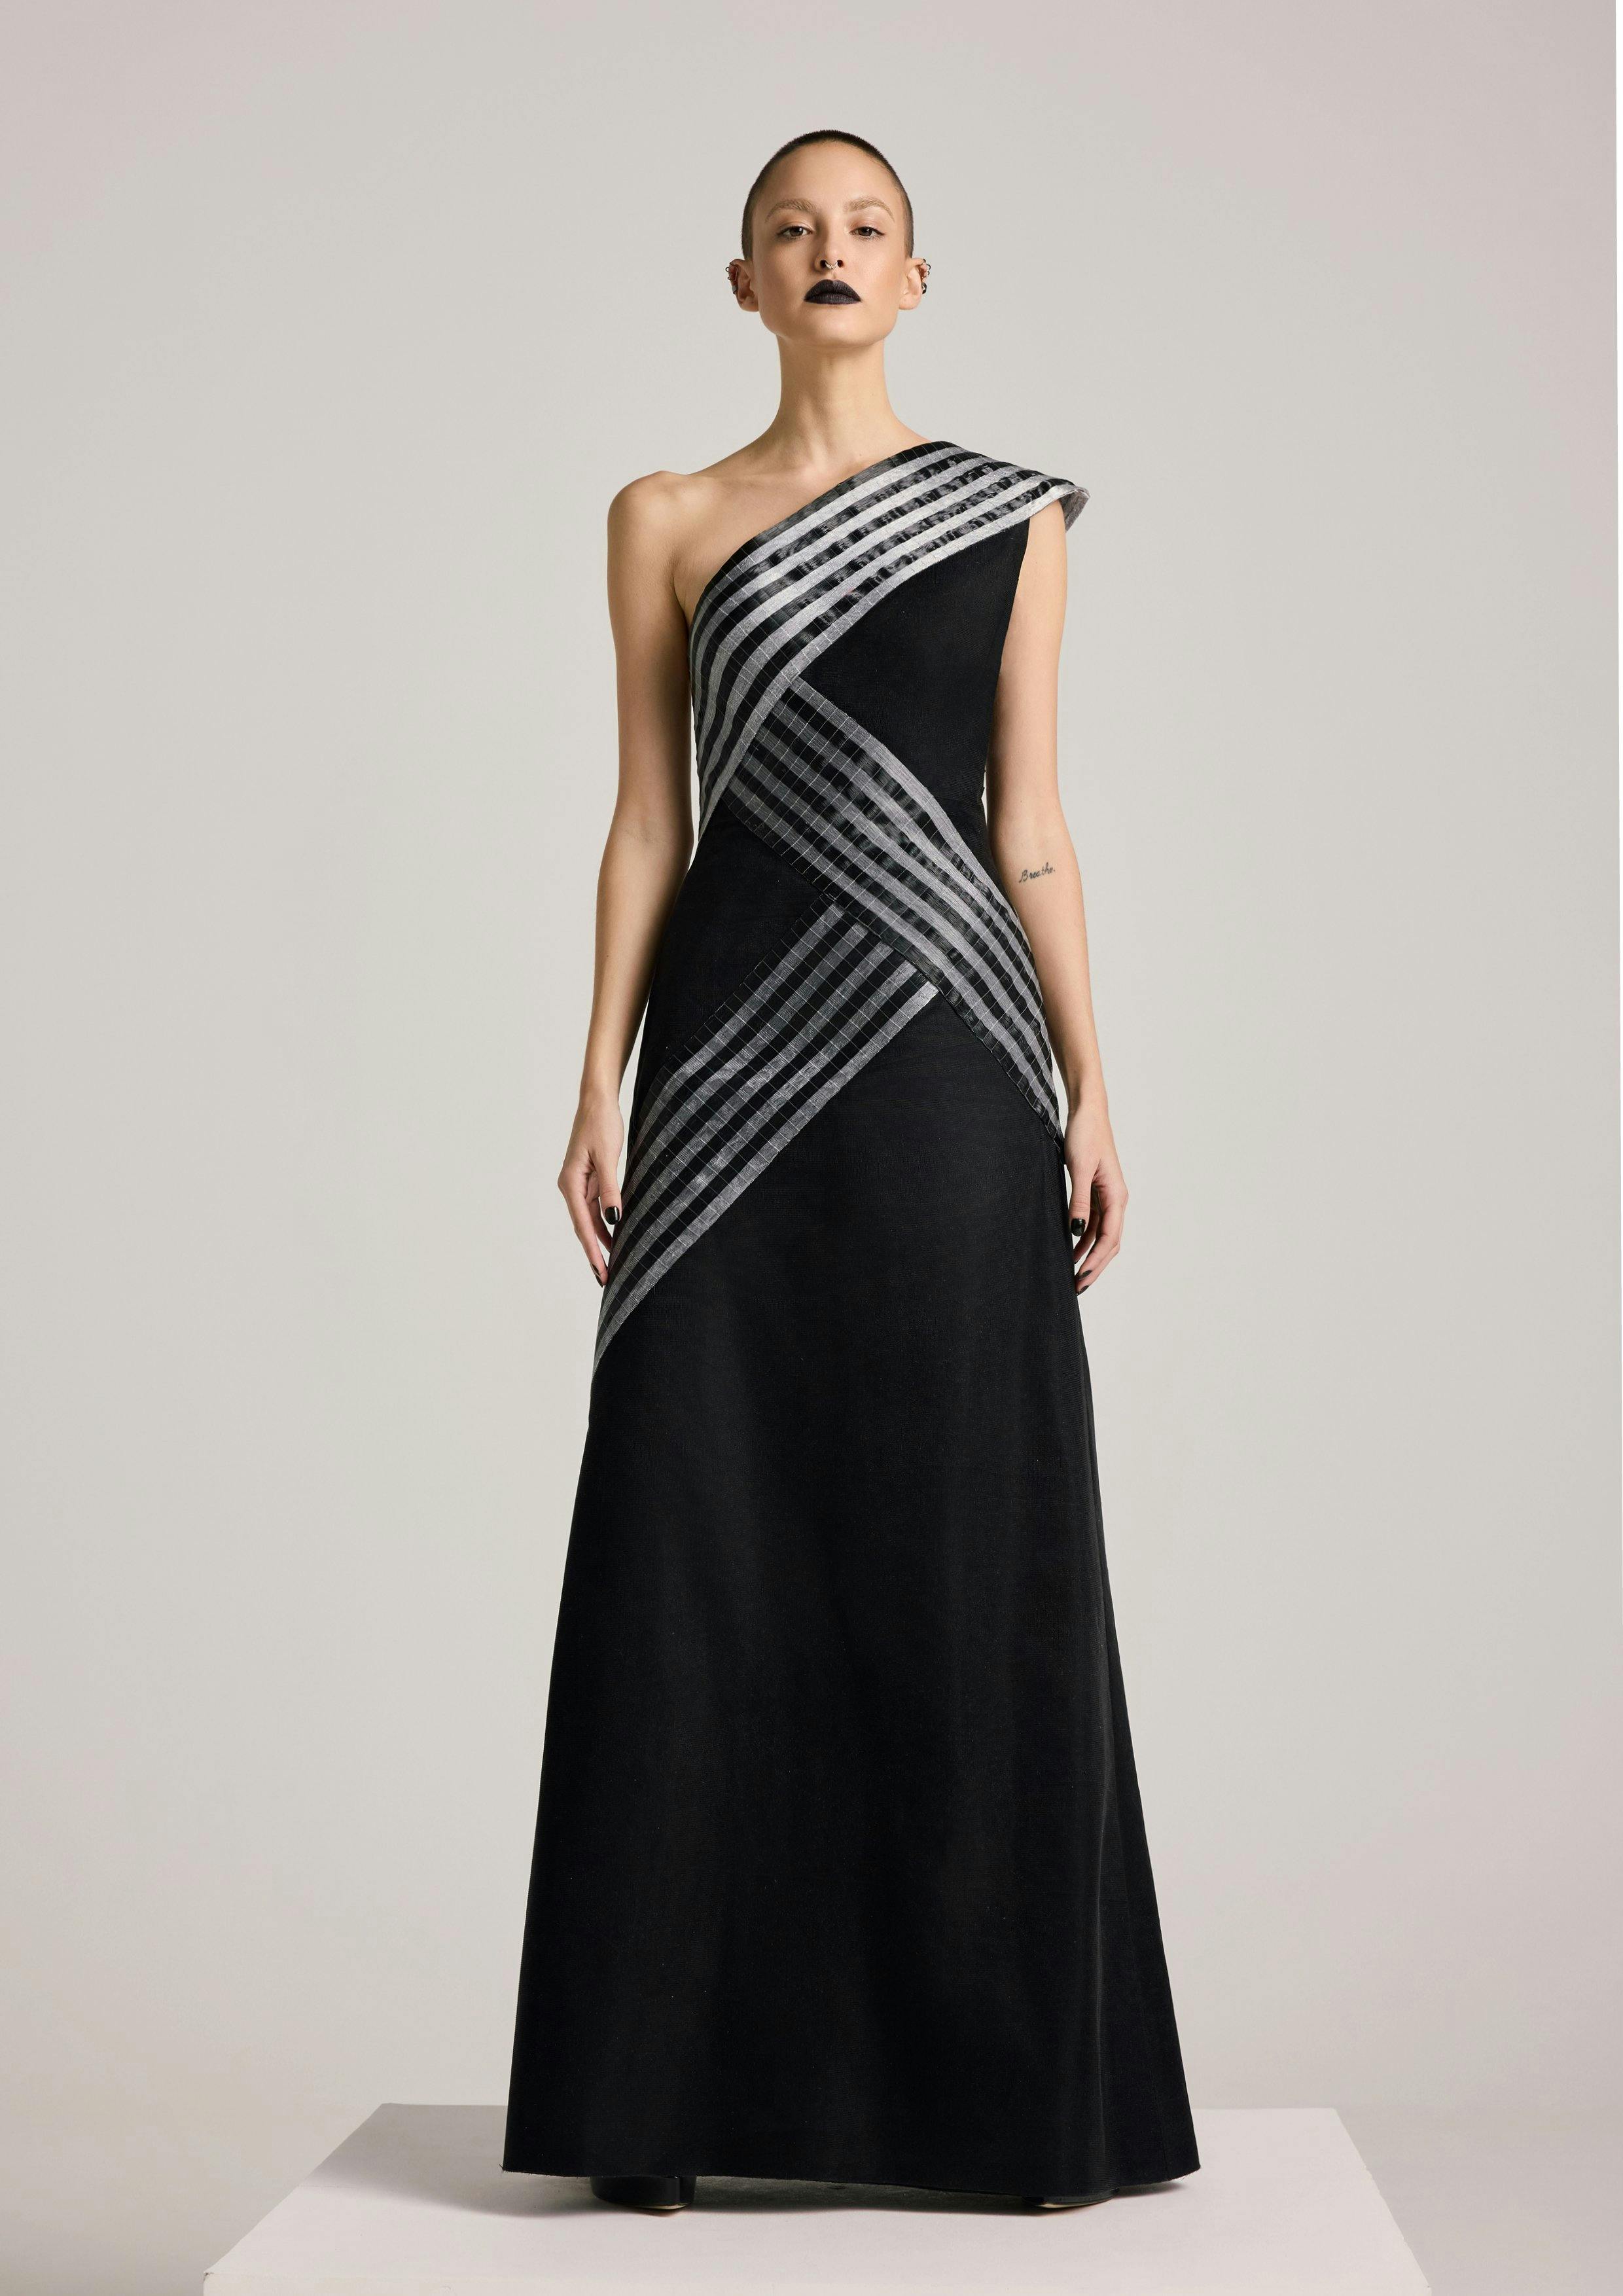 Thumbnail preview #0 for Asymmetric Glass Dress